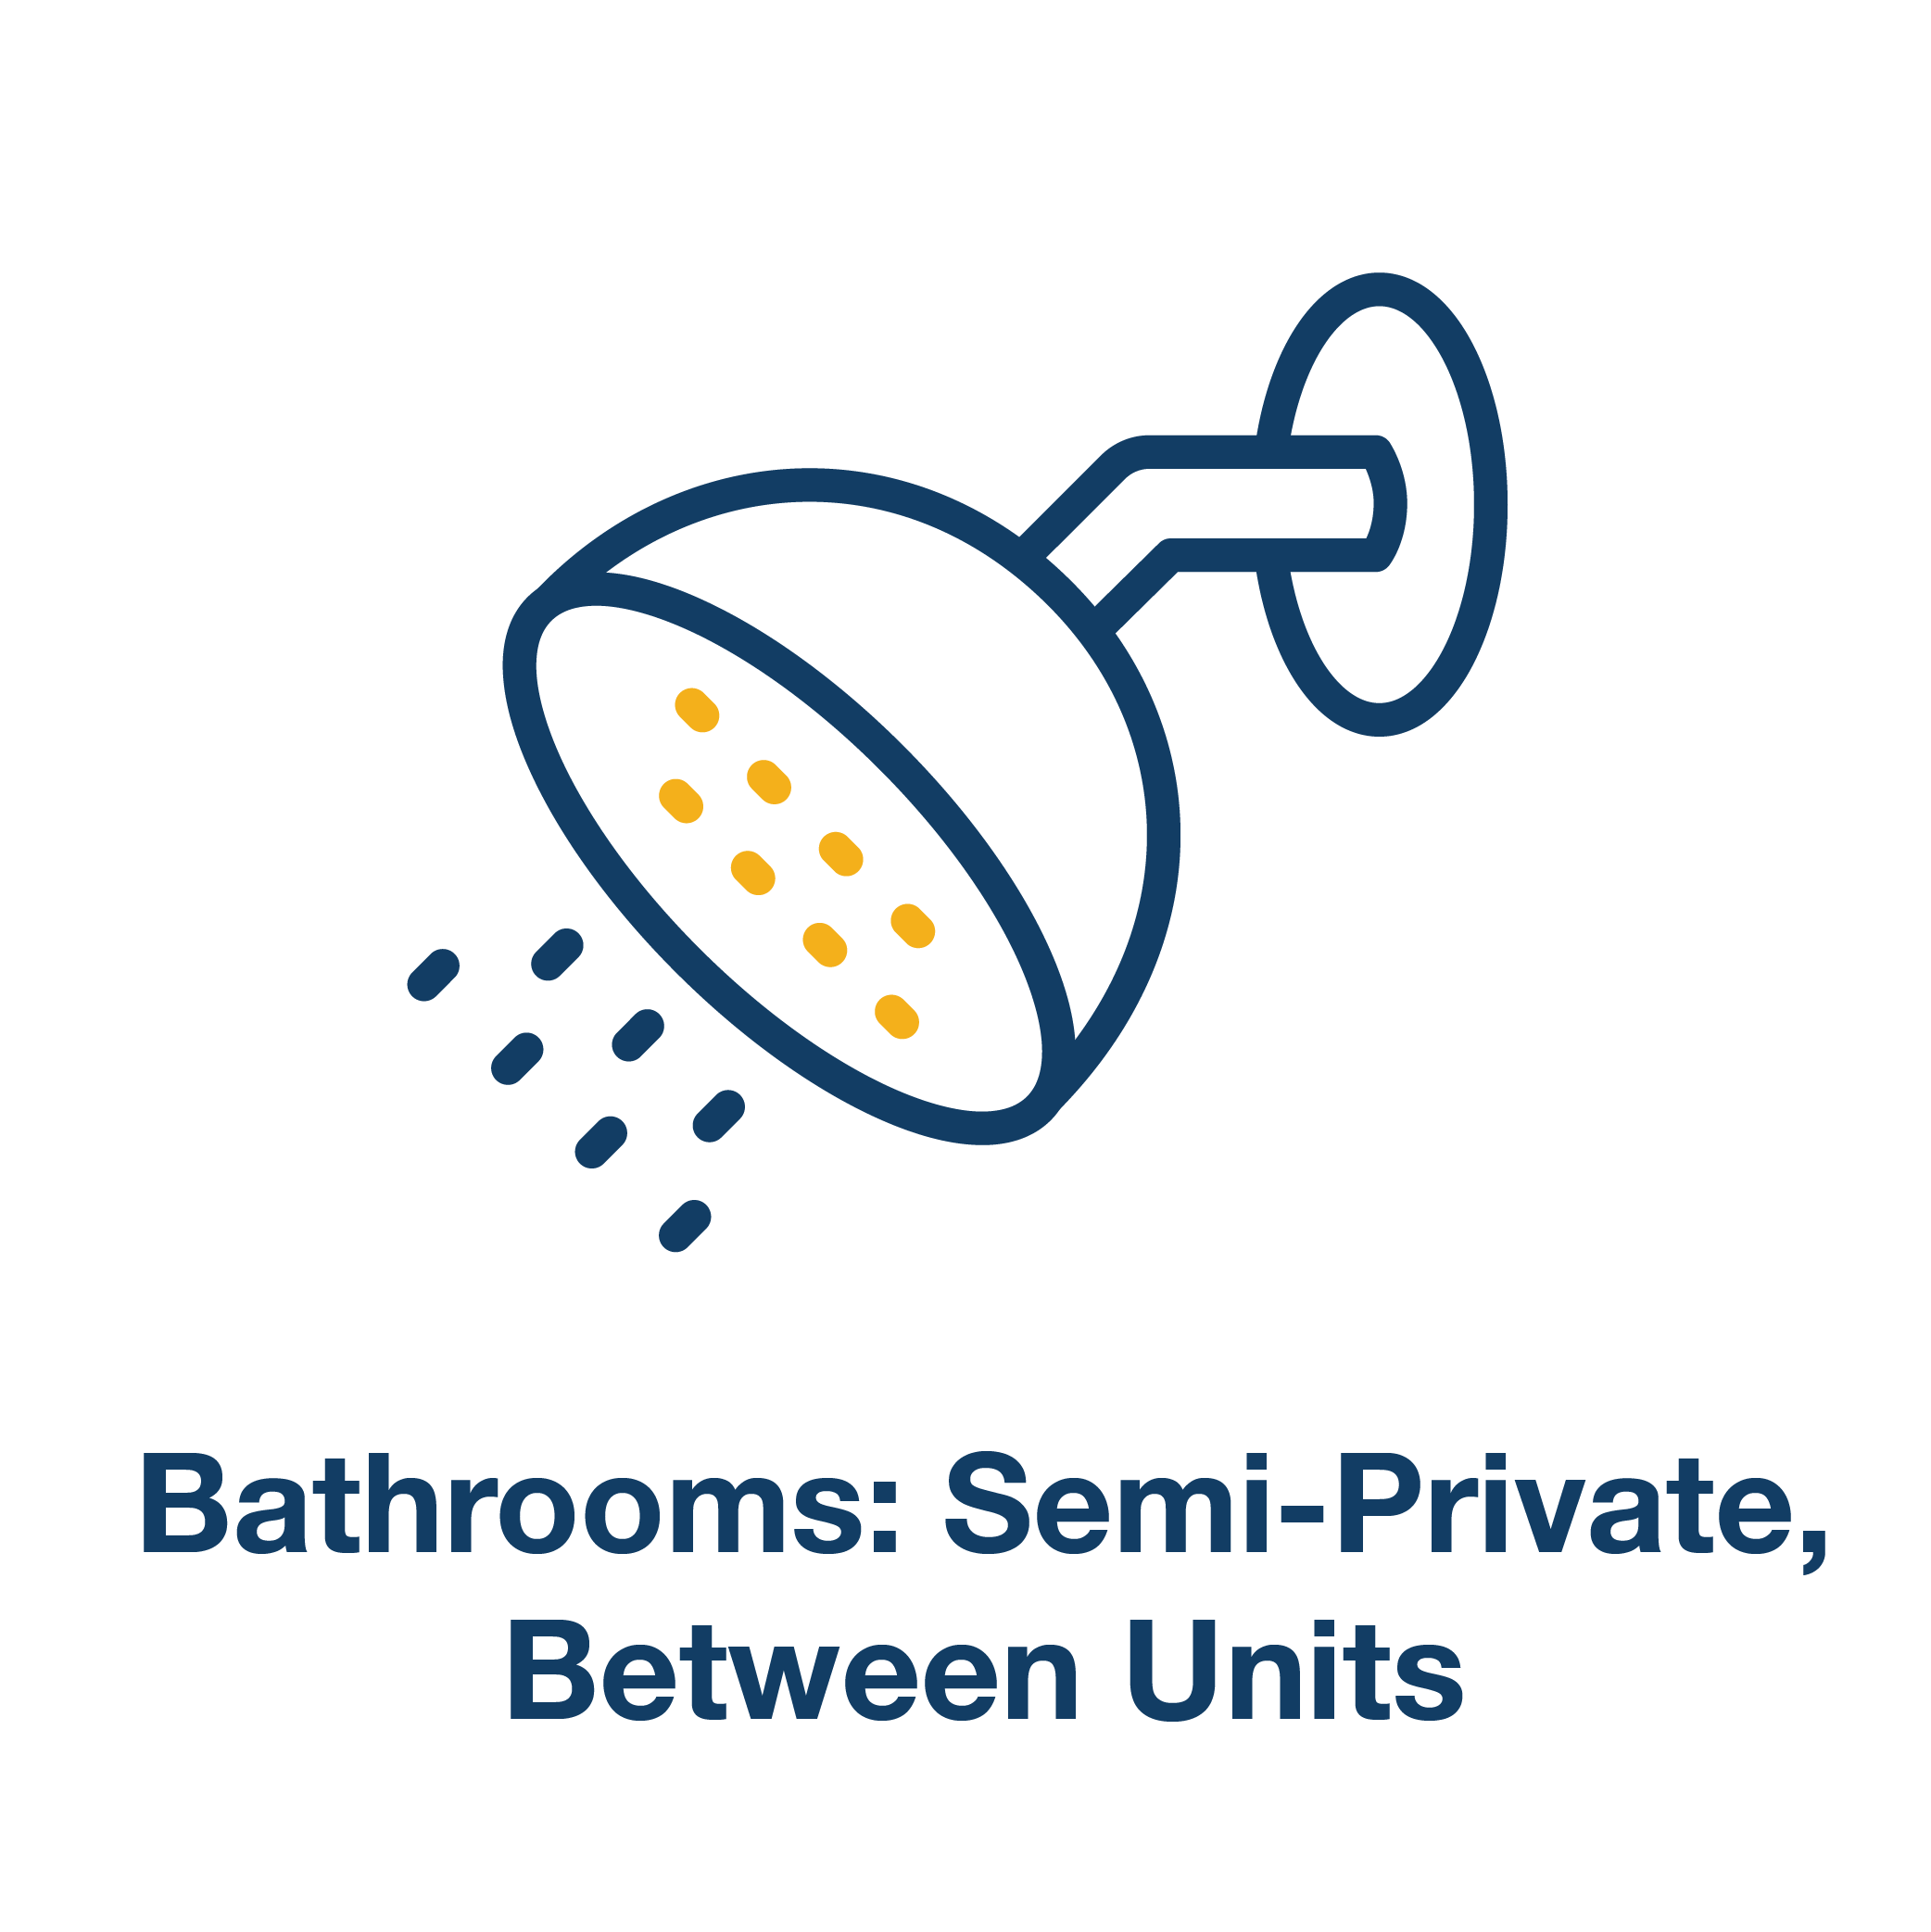 Semi-Private Bathrooms